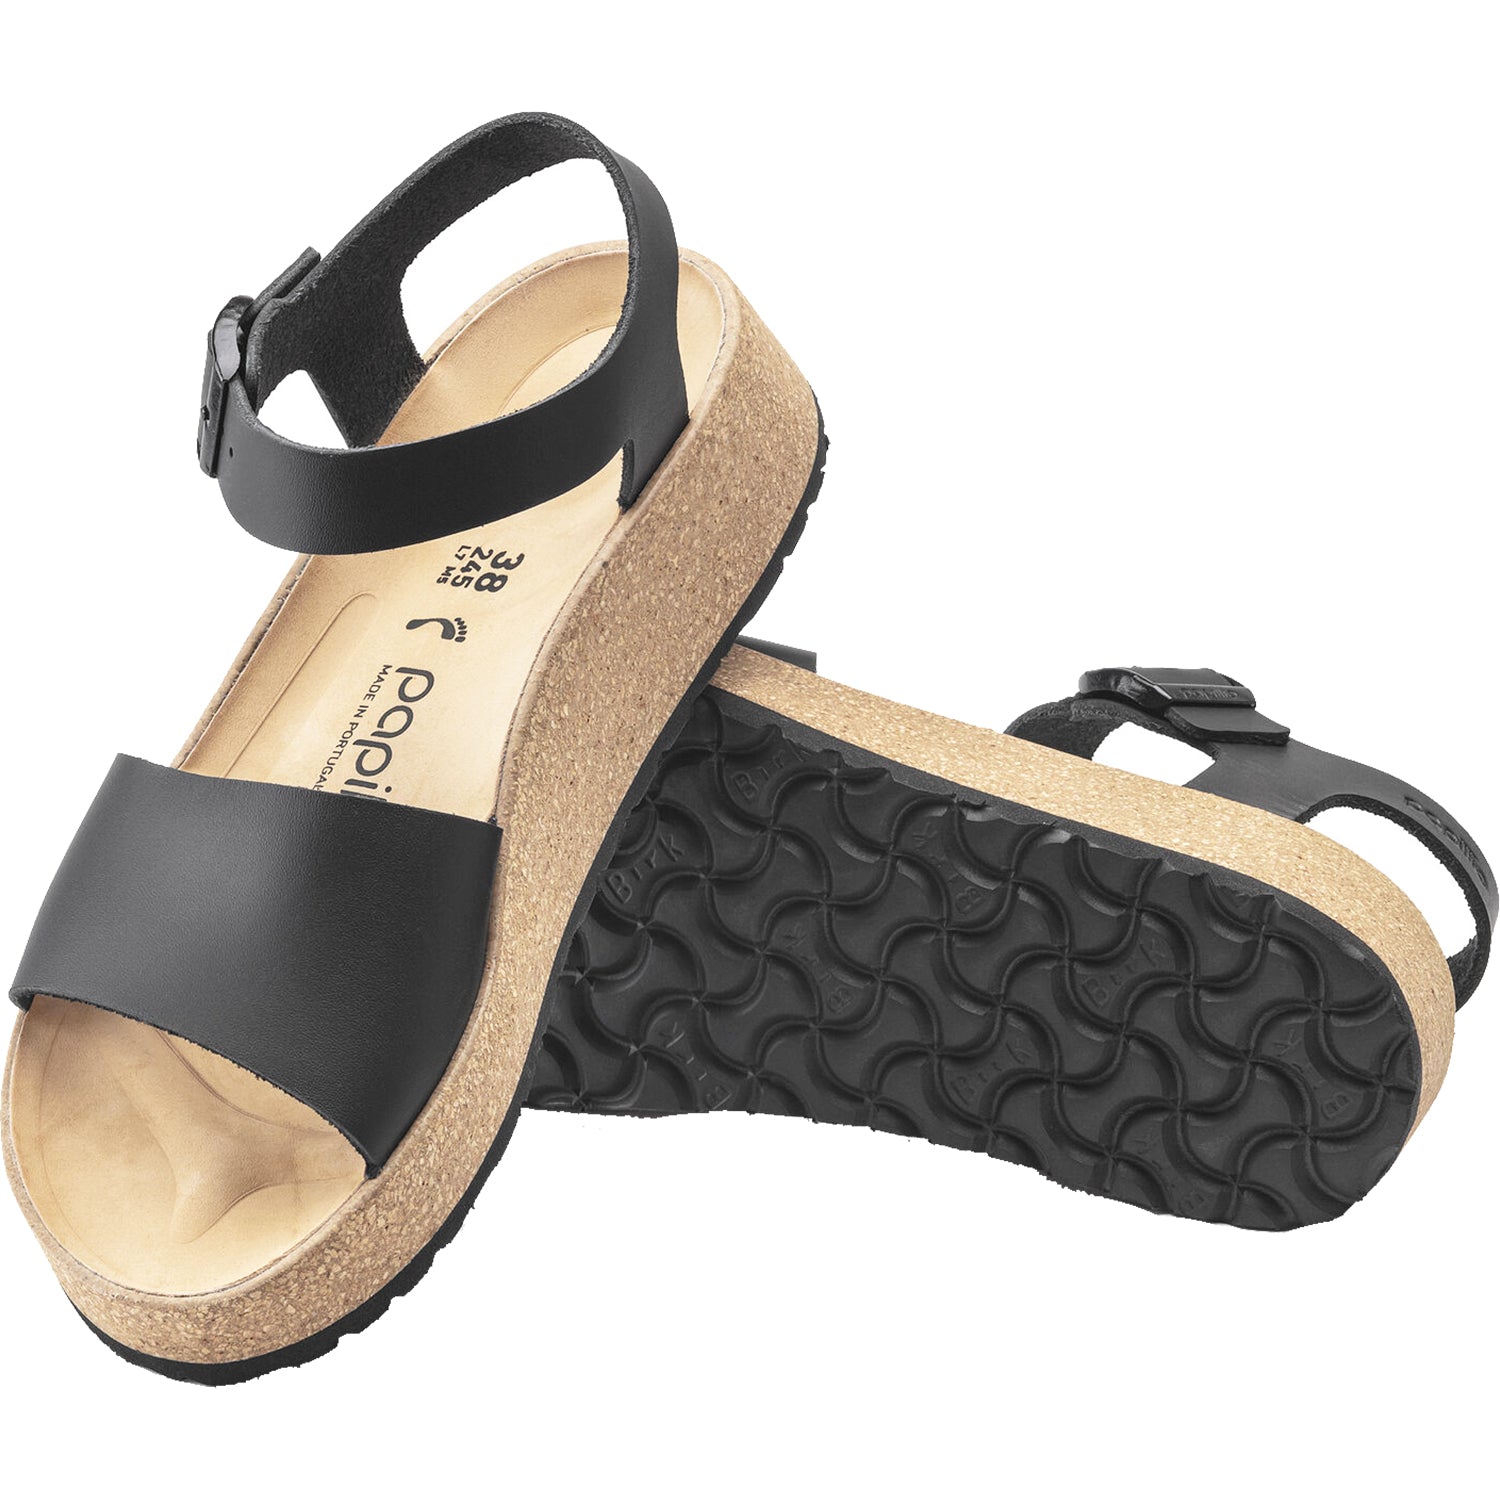 Birkenstock Glenda | Women's Wedge Heel Sandals | Footwear etc.